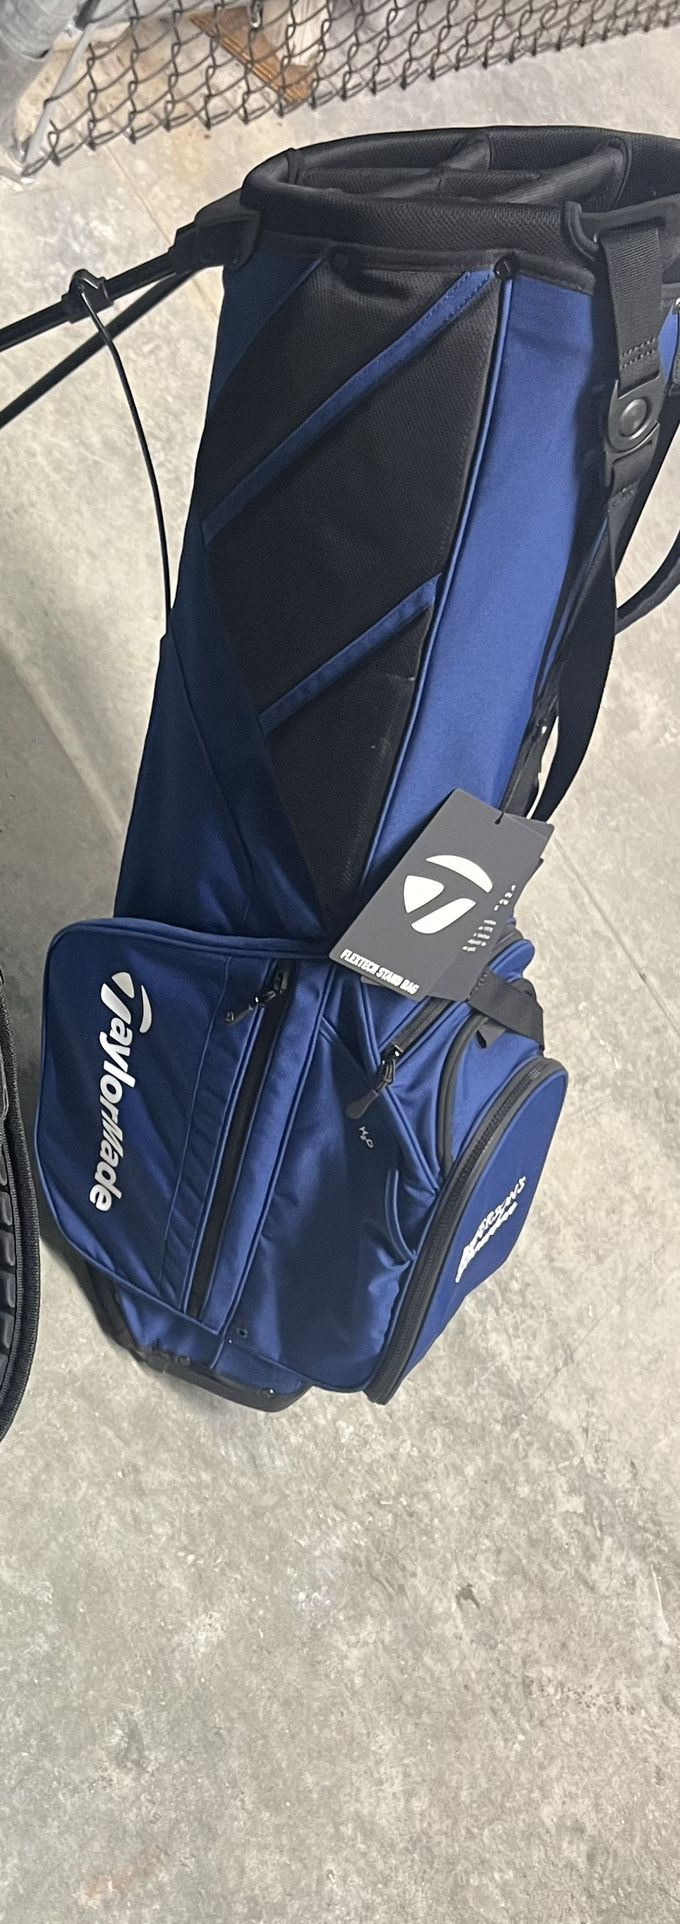 NWT Taylor Made Flextech Golf Bag